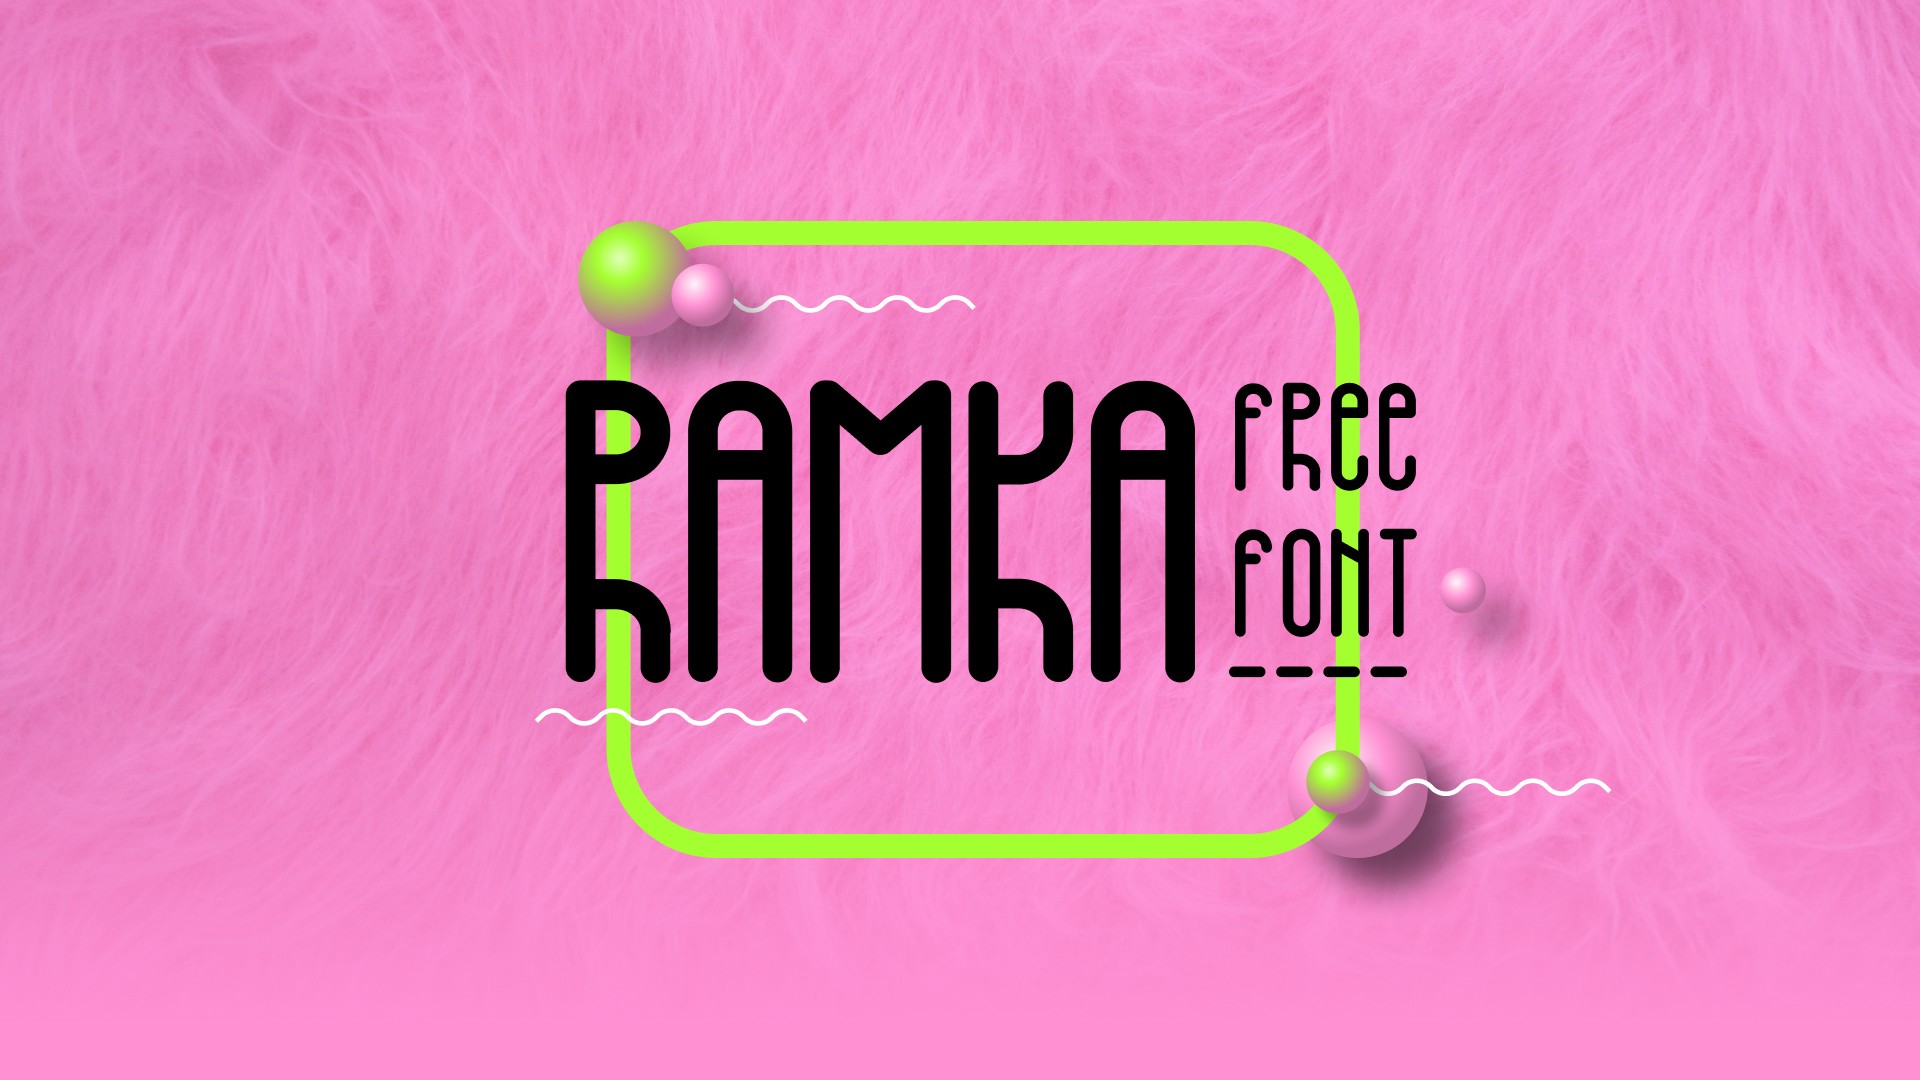 Ramka-free font